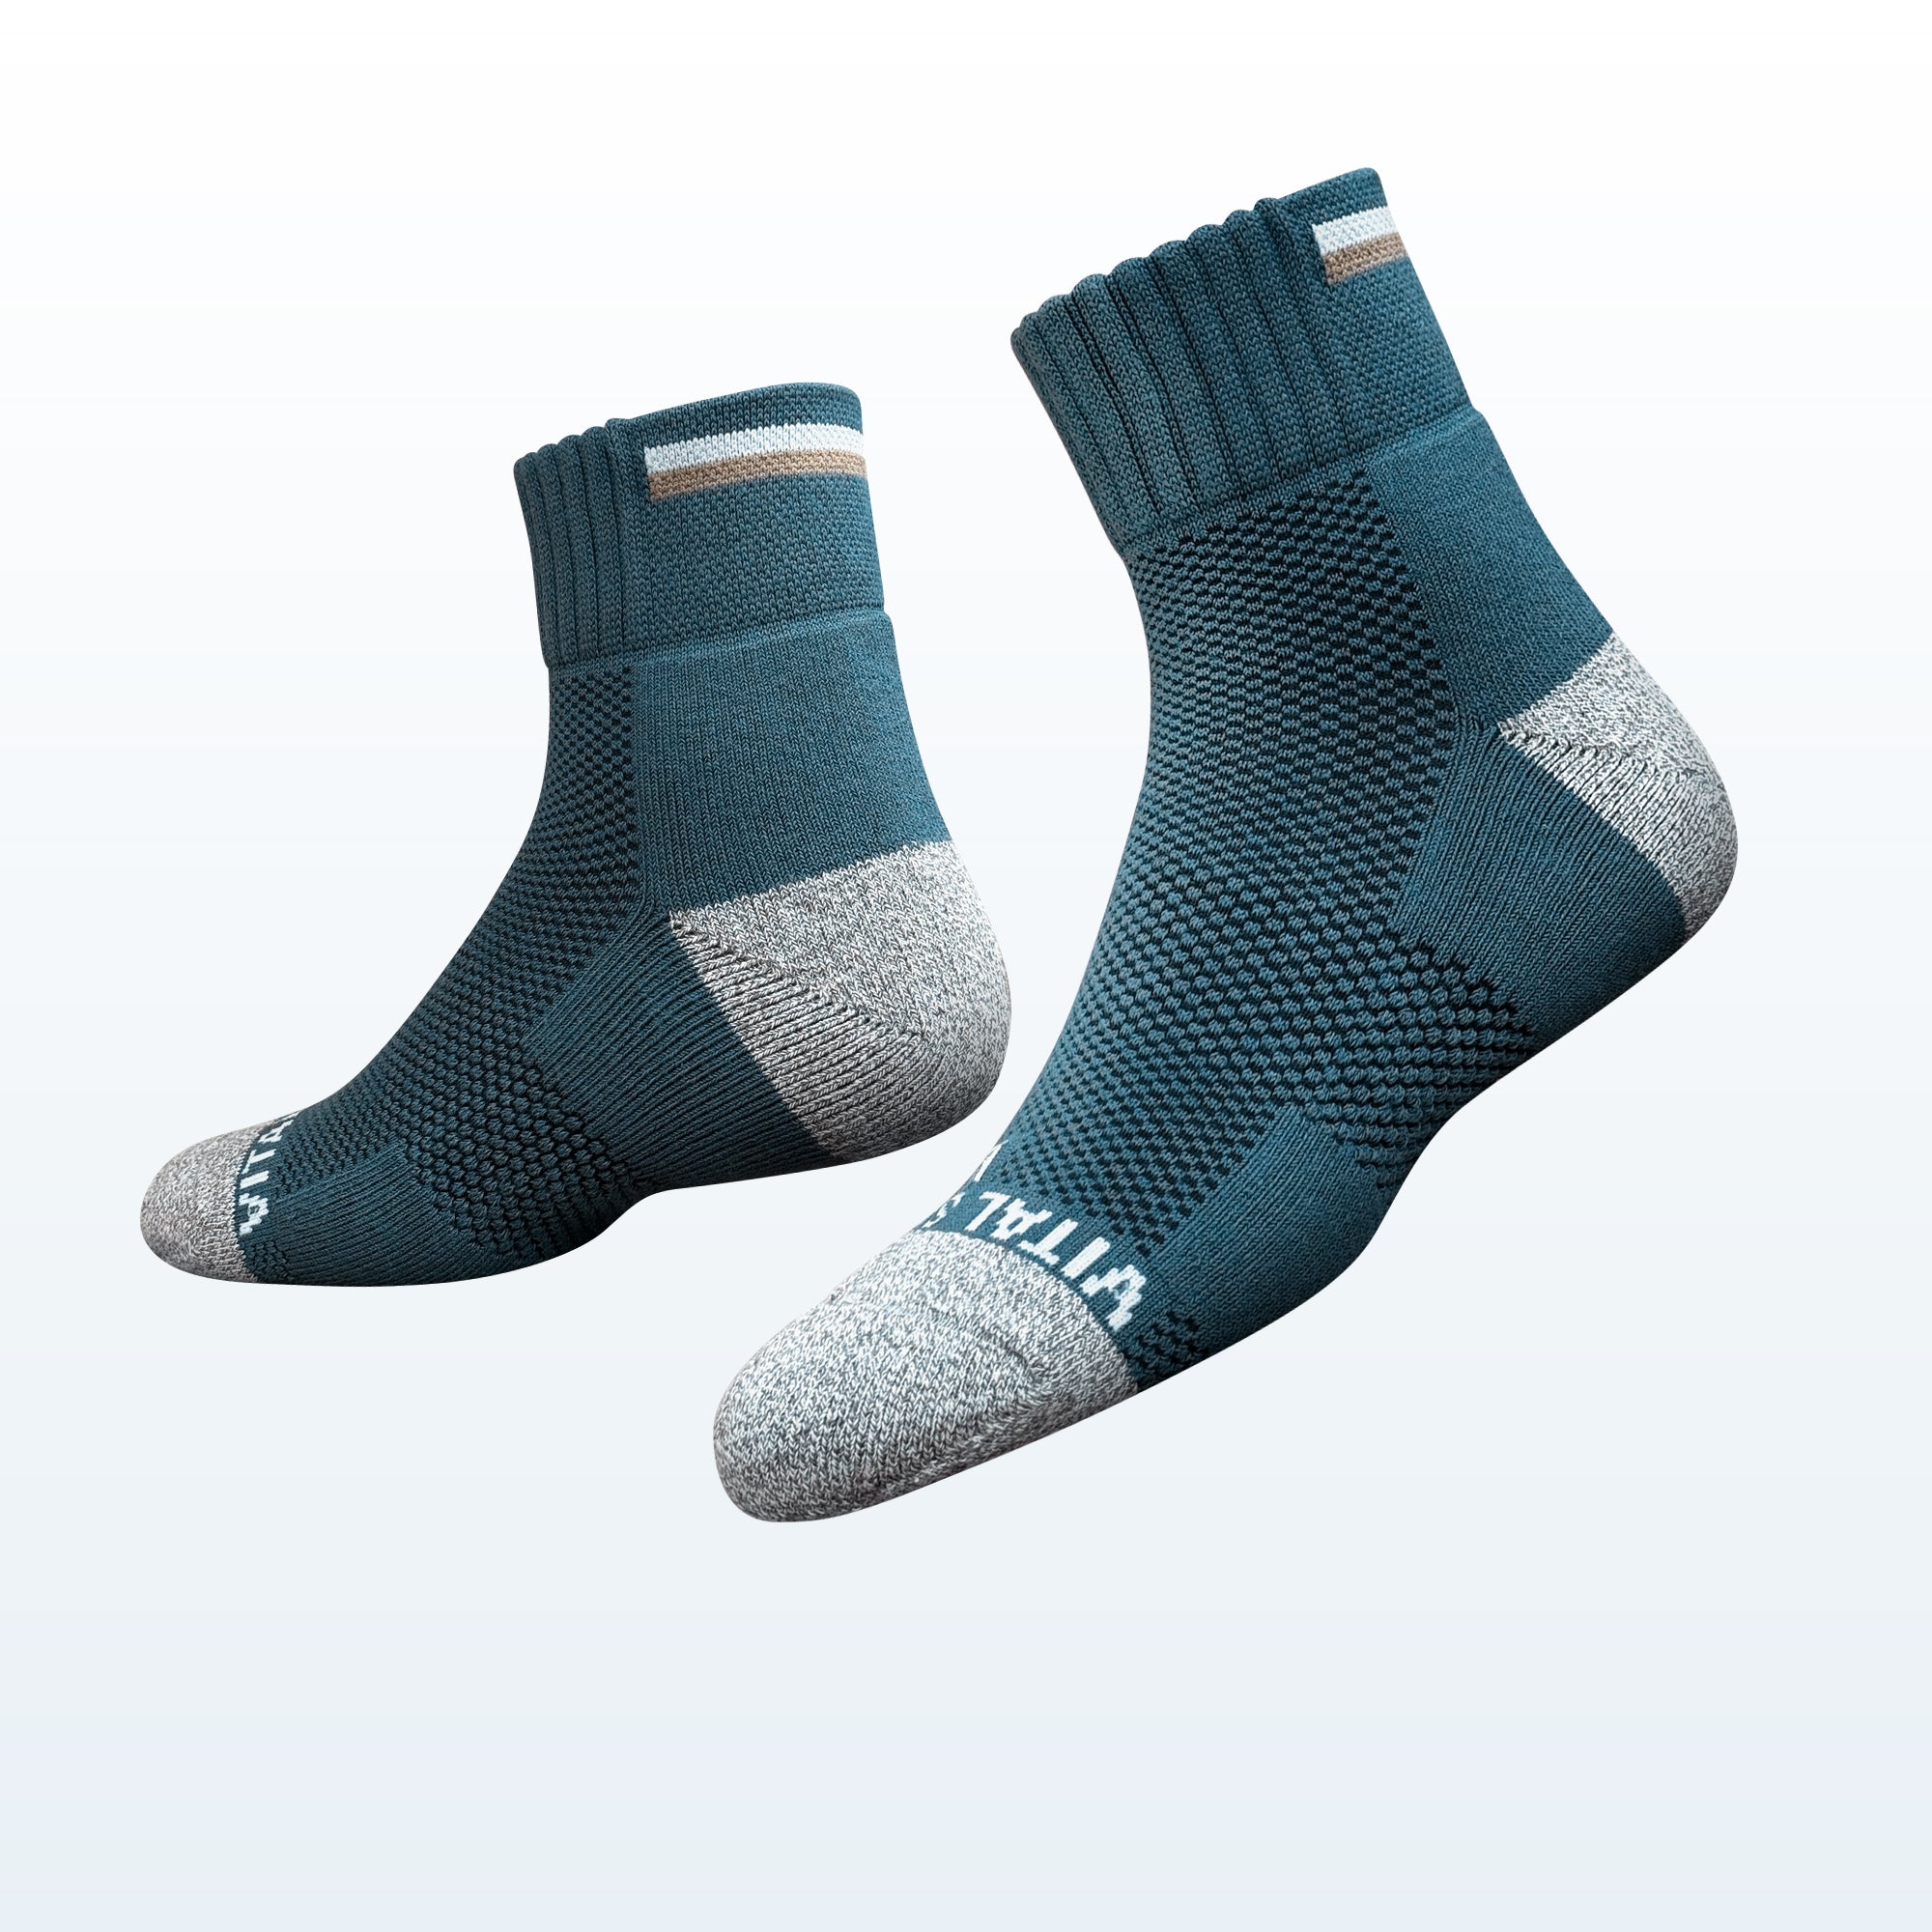 Hiking / Trek Ankle Socks (3 Pairs) - Vital Salveo